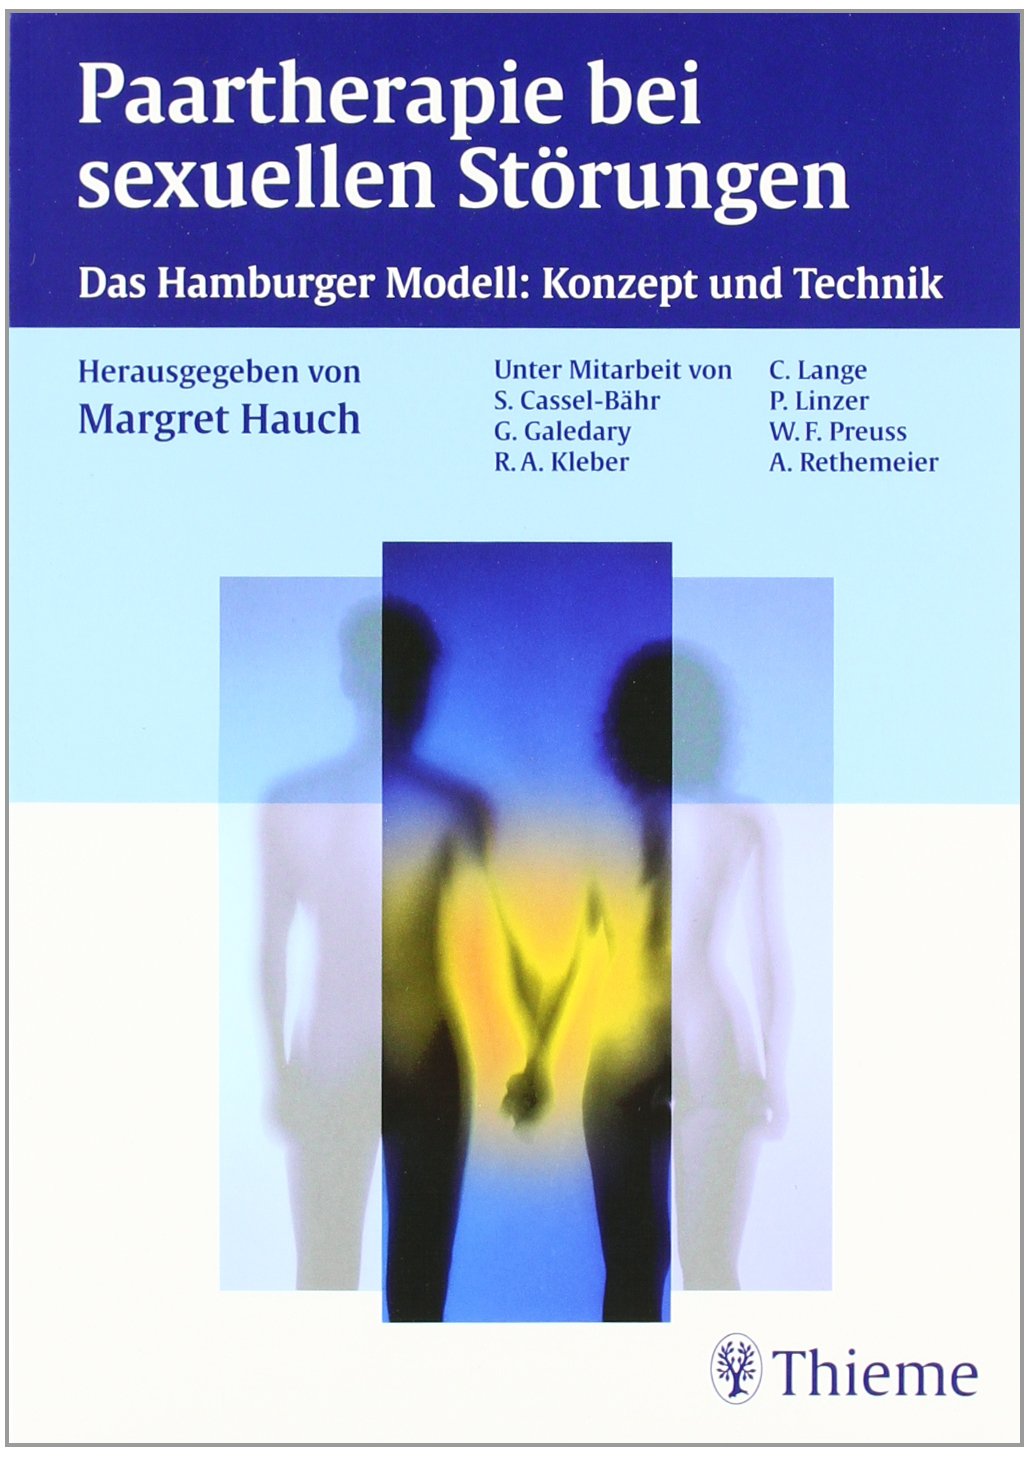 Paartherapie bei sexuellen Störungen. Das Hamburger Modell. Konzept und Technik